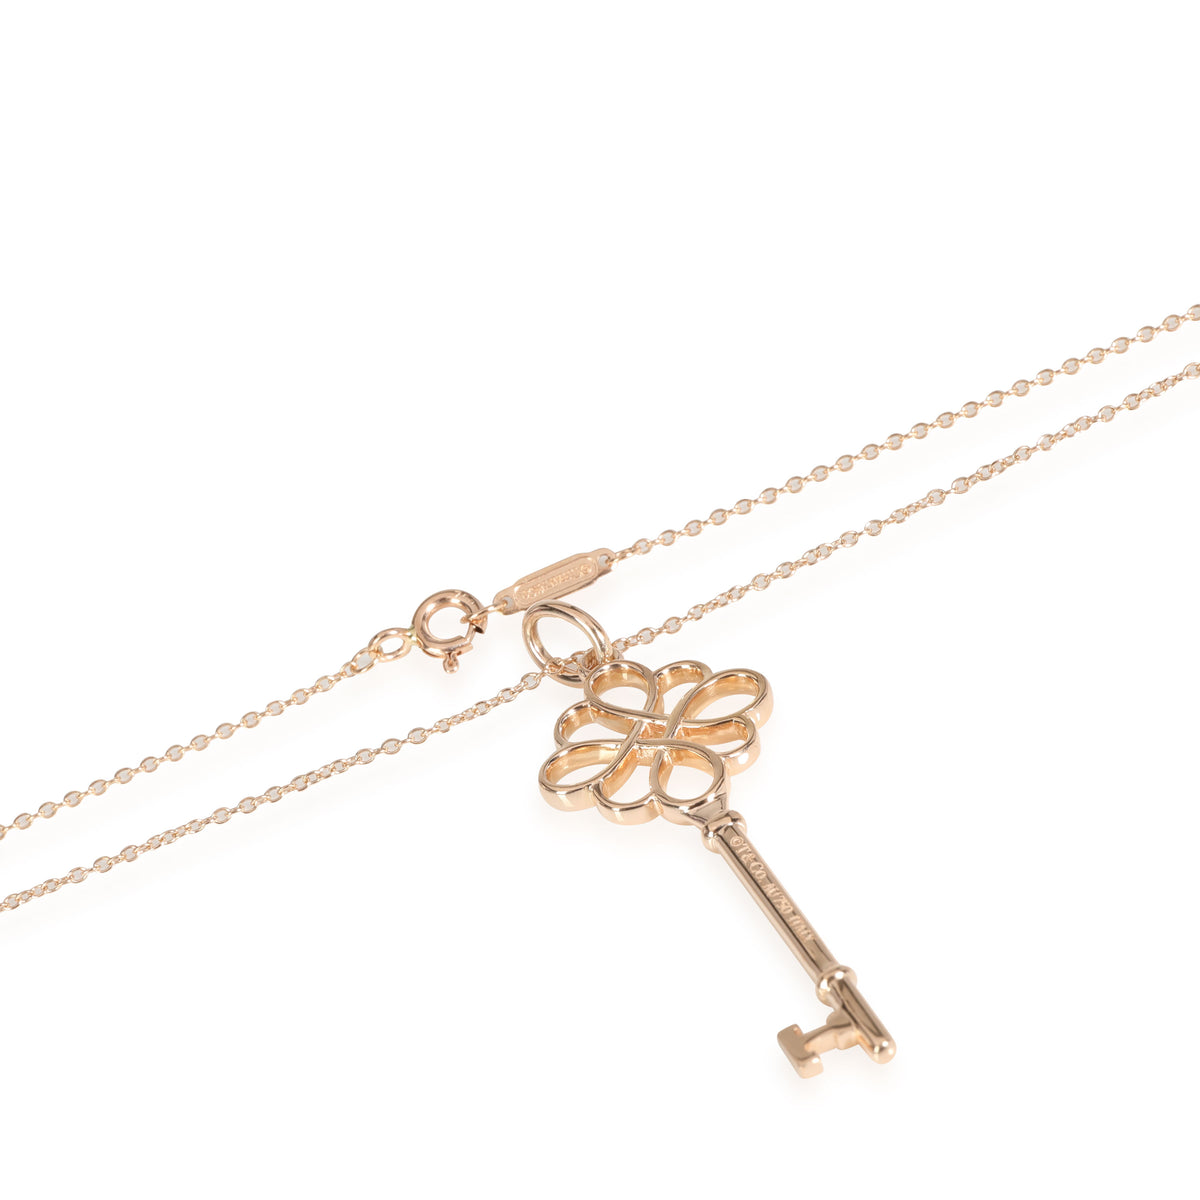 Tiffany & Company Tiffany Keys Knot Key Pendant